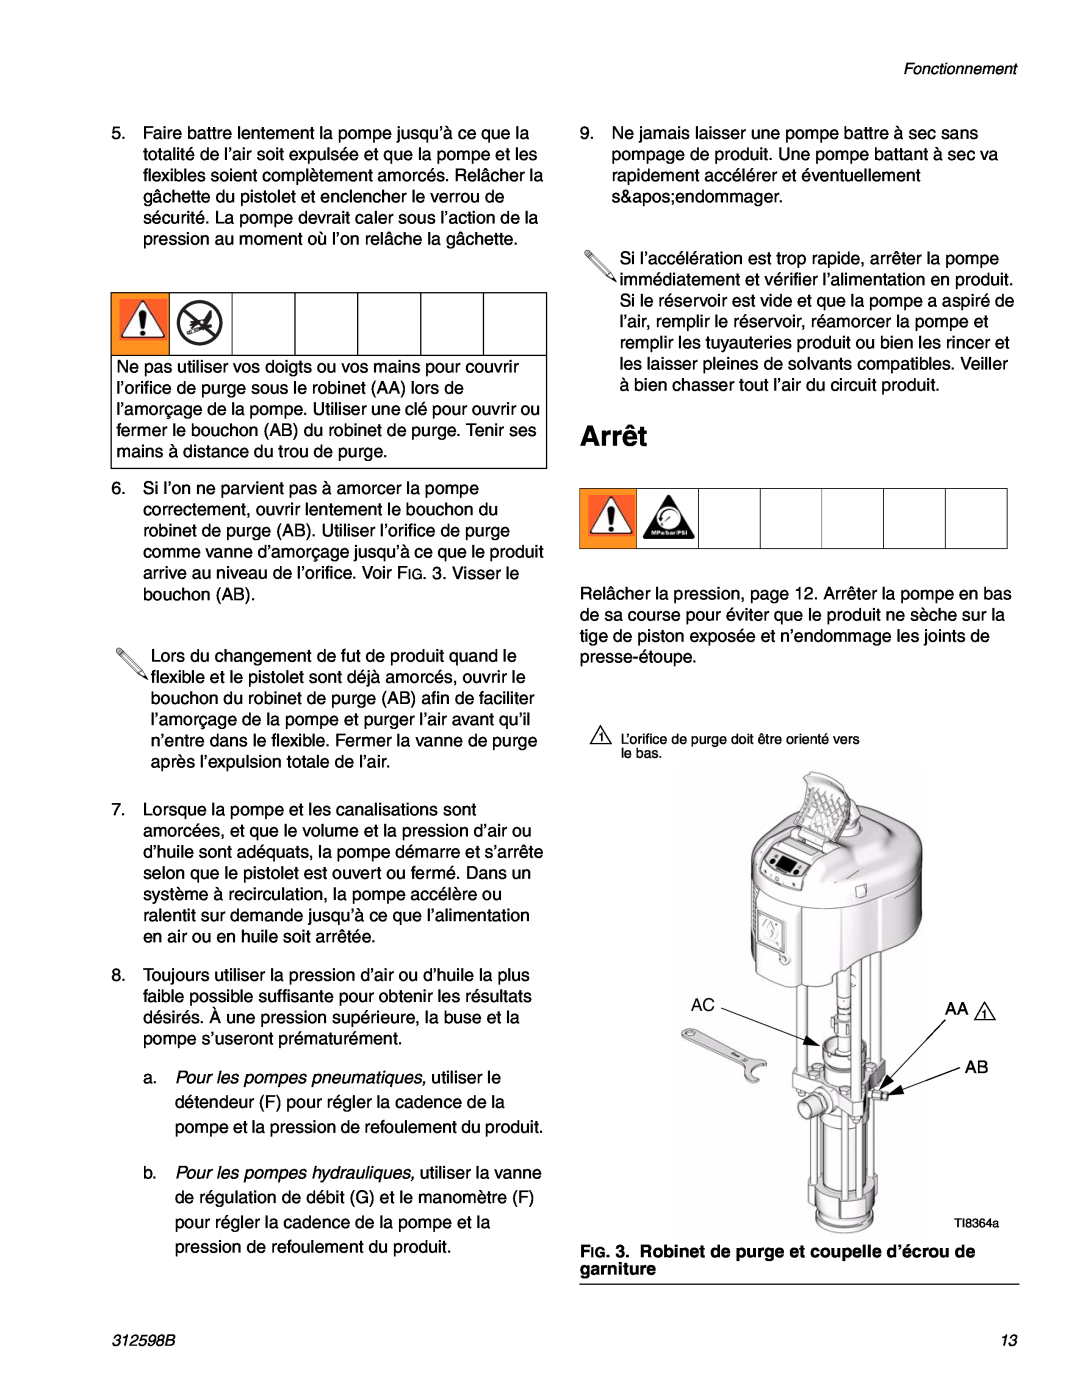 Graco TI8885a, TI8900a manual Arrêt 